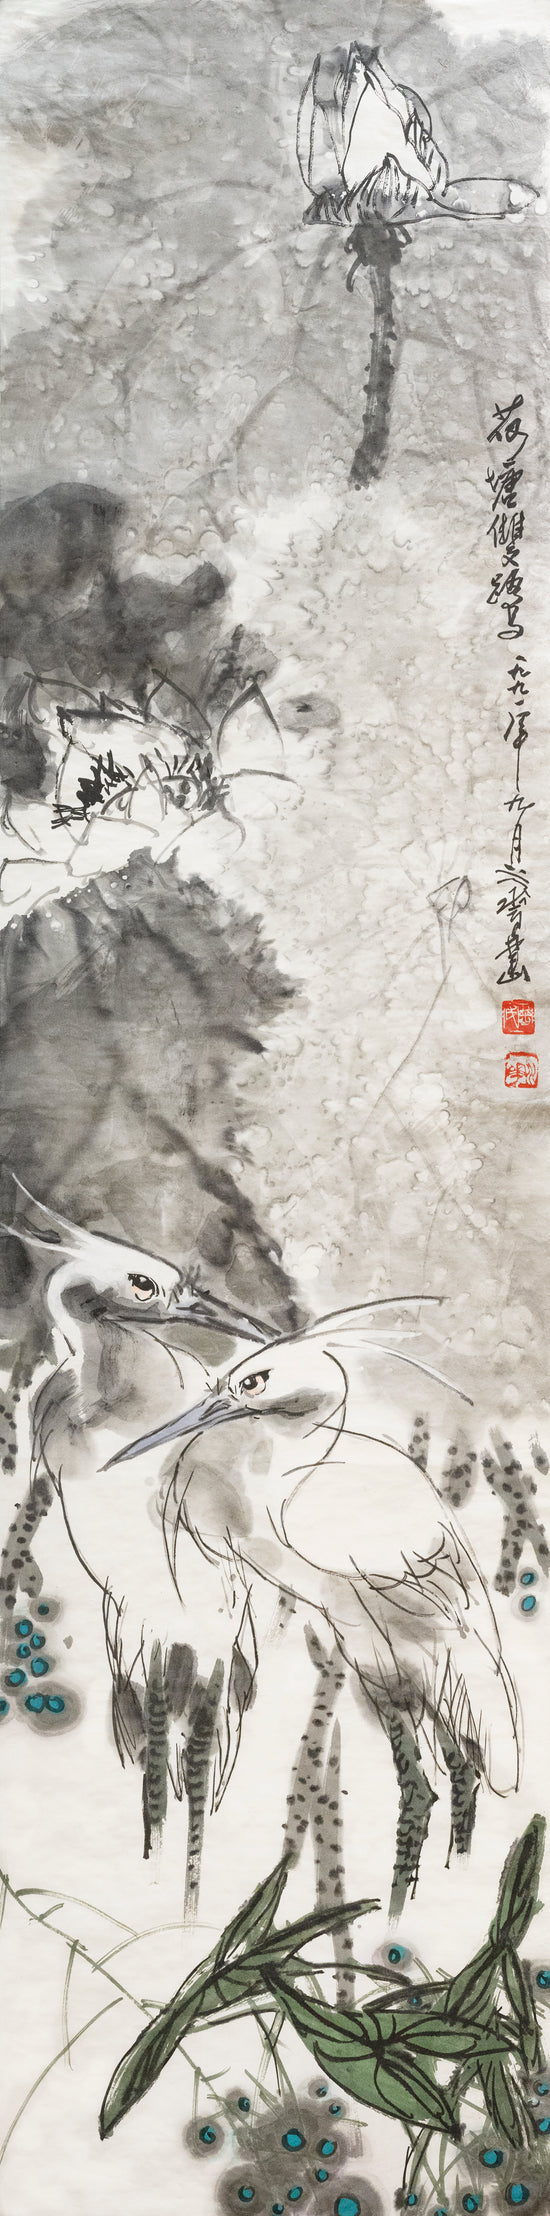 荷塘双鹭 Two Herons On Lotus Pond-曽水华 (Zeng, Shuihua)